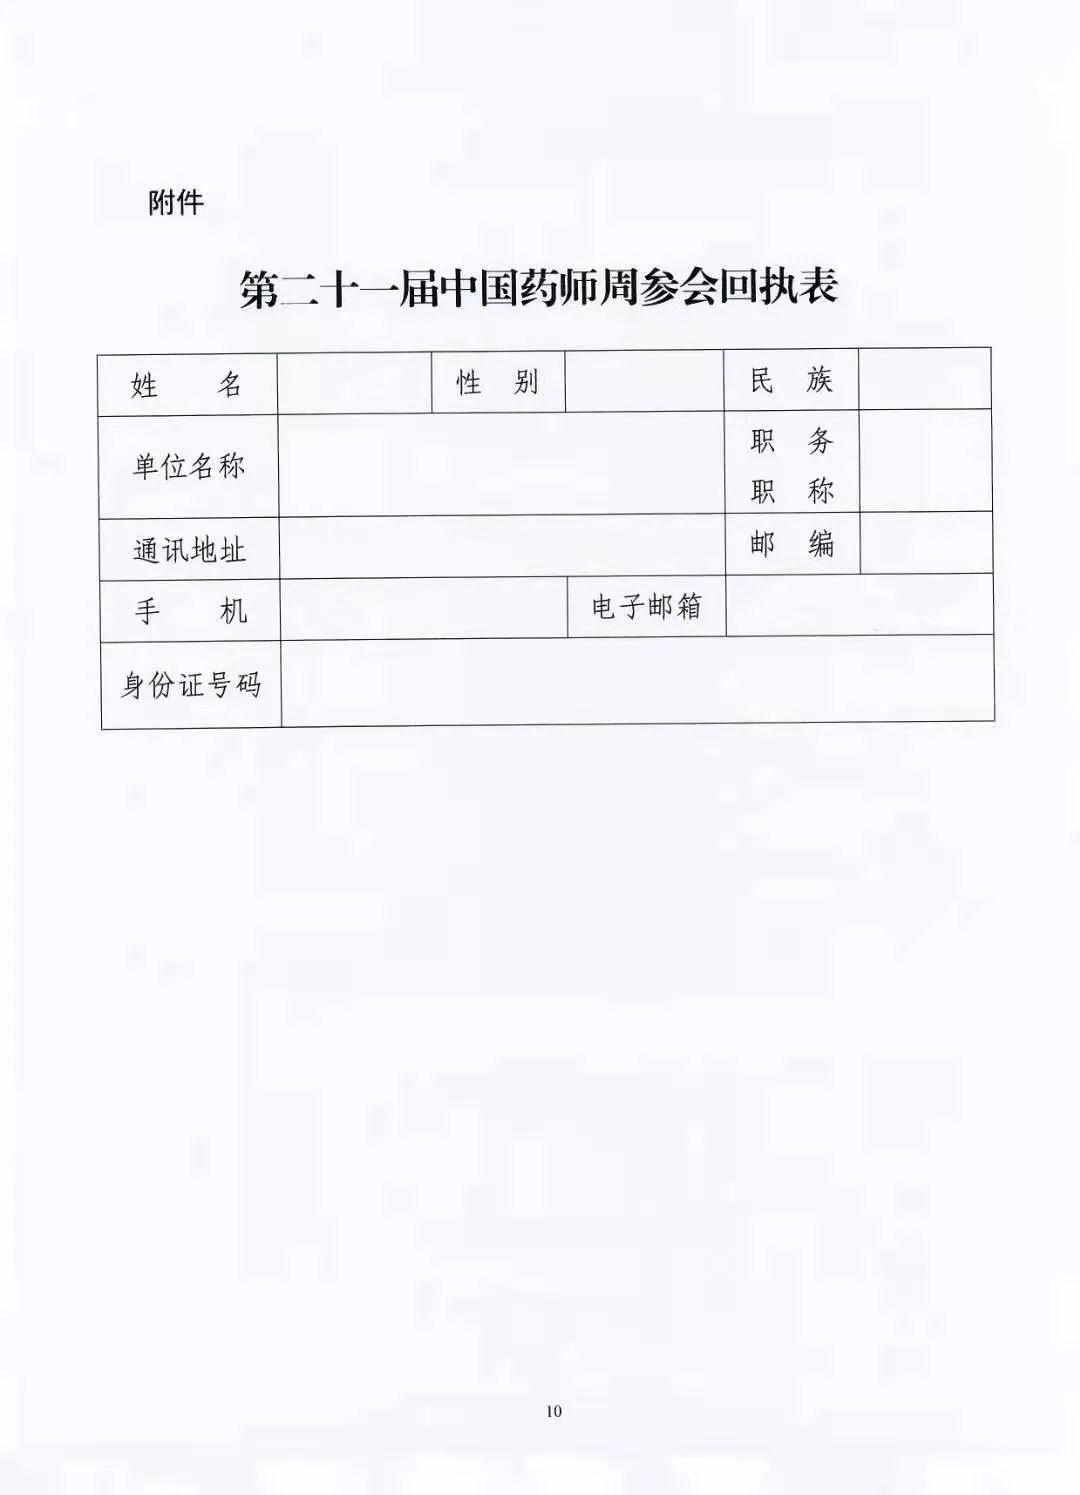 关于举办中国药学会第二十一届中国药师周的通知（第一轮）(图10)